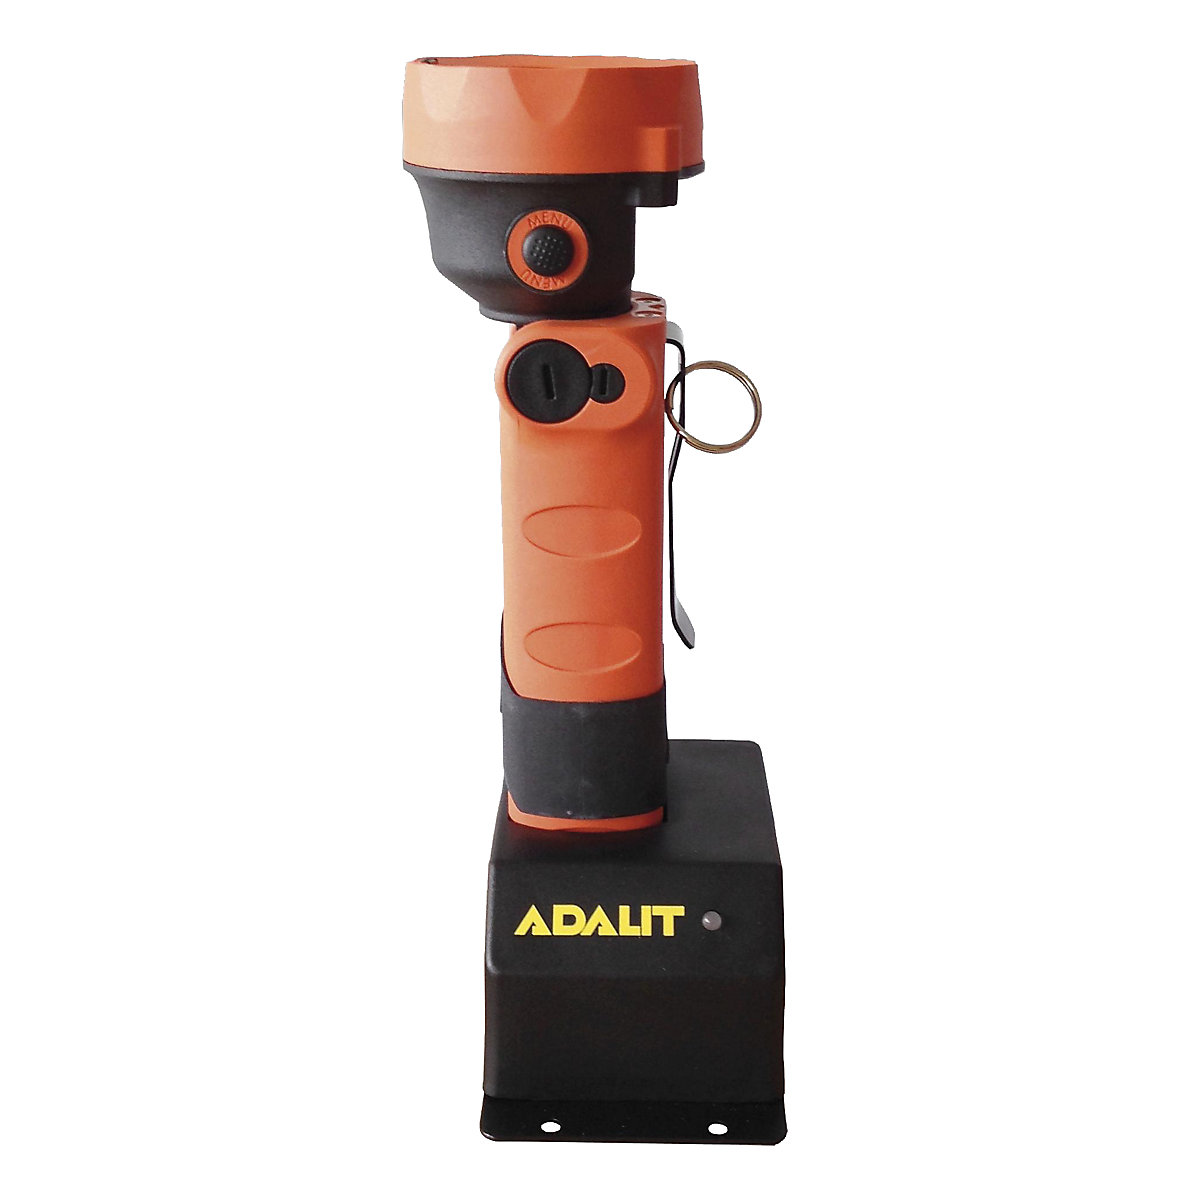 Laadapparaat voor ADALIT®-handlampen (Productafbeelding 3)-2